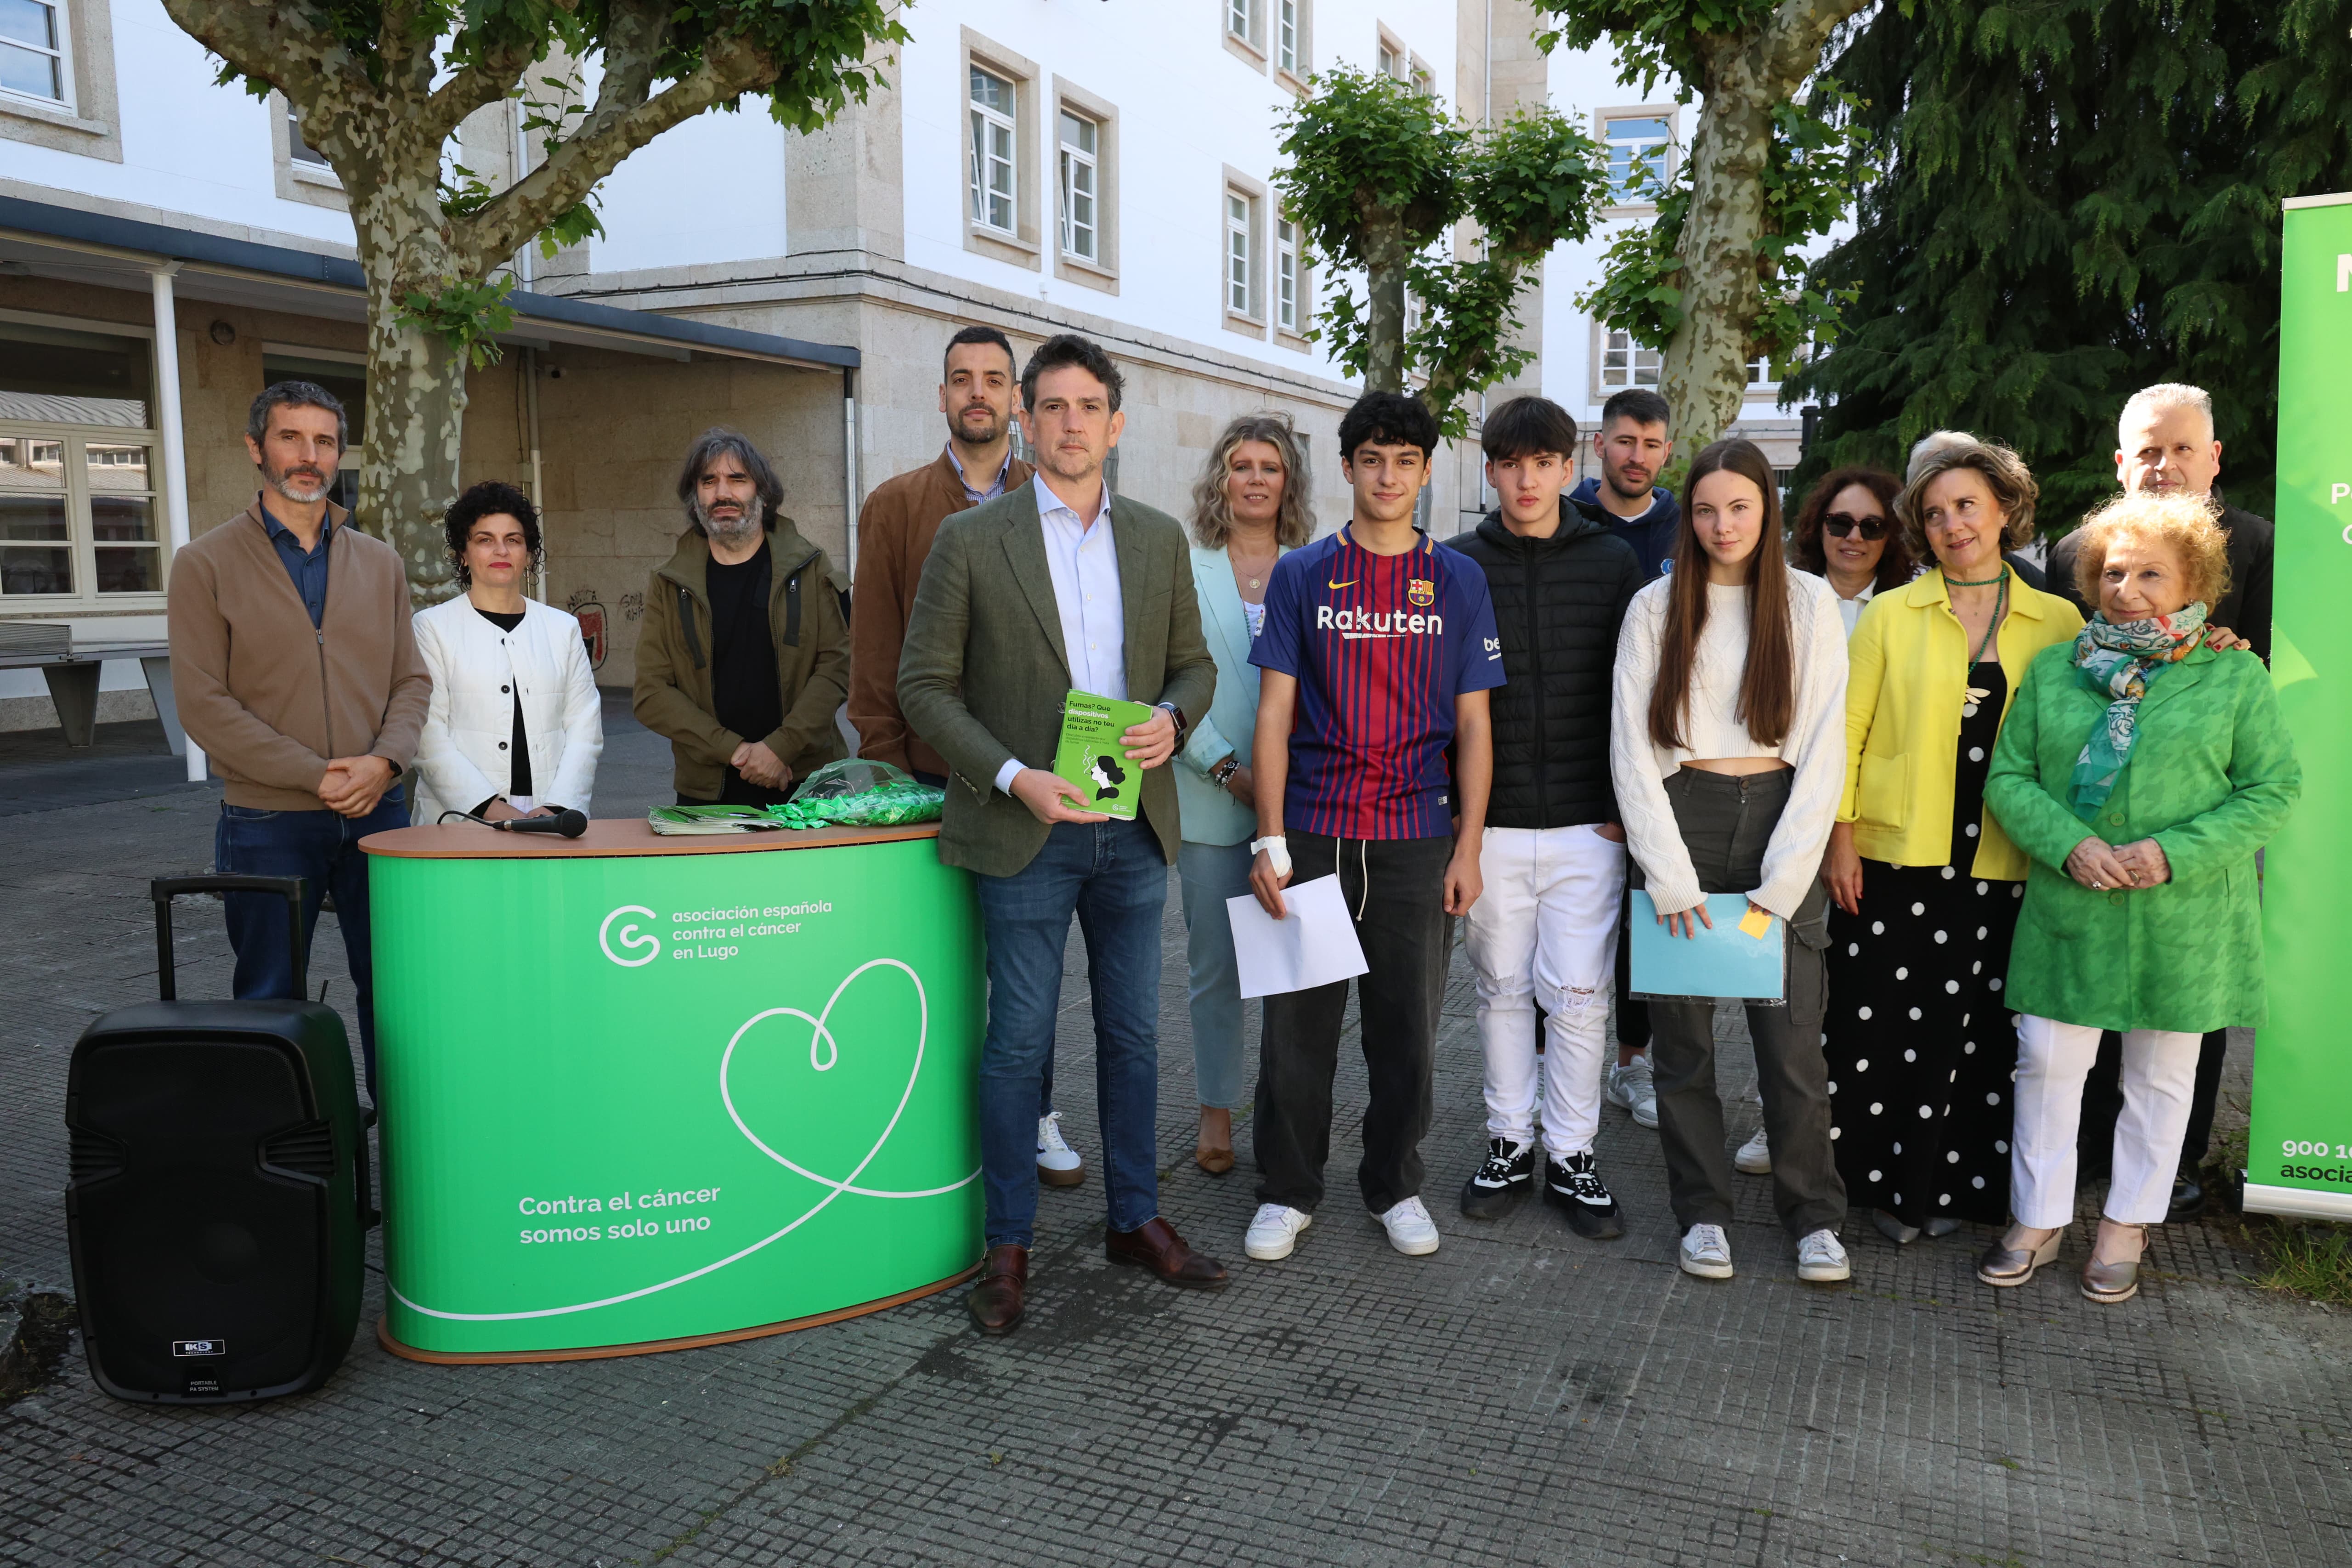 Image 2 of article O delegado da Xunta súmase á lectura do manifesto contra o tabaco promovida pola AECC en centros educativos de Lugo